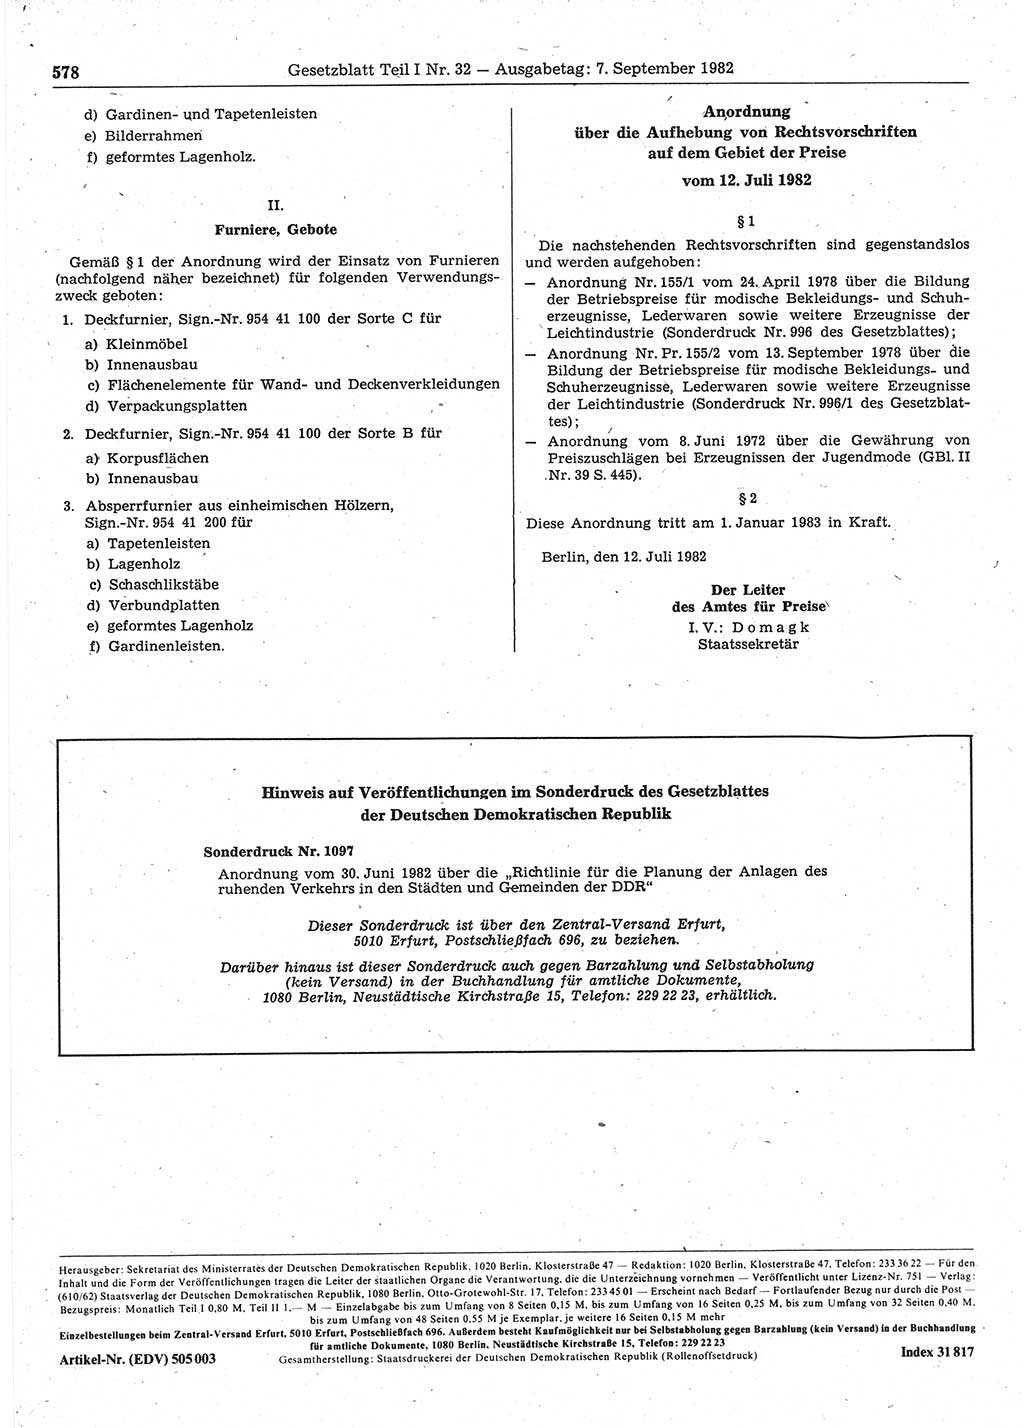 Gesetzblatt (GBl.) der Deutschen Demokratischen Republik (DDR) Teil Ⅰ 1982, Seite 578 (GBl. DDR Ⅰ 1982, S. 578)